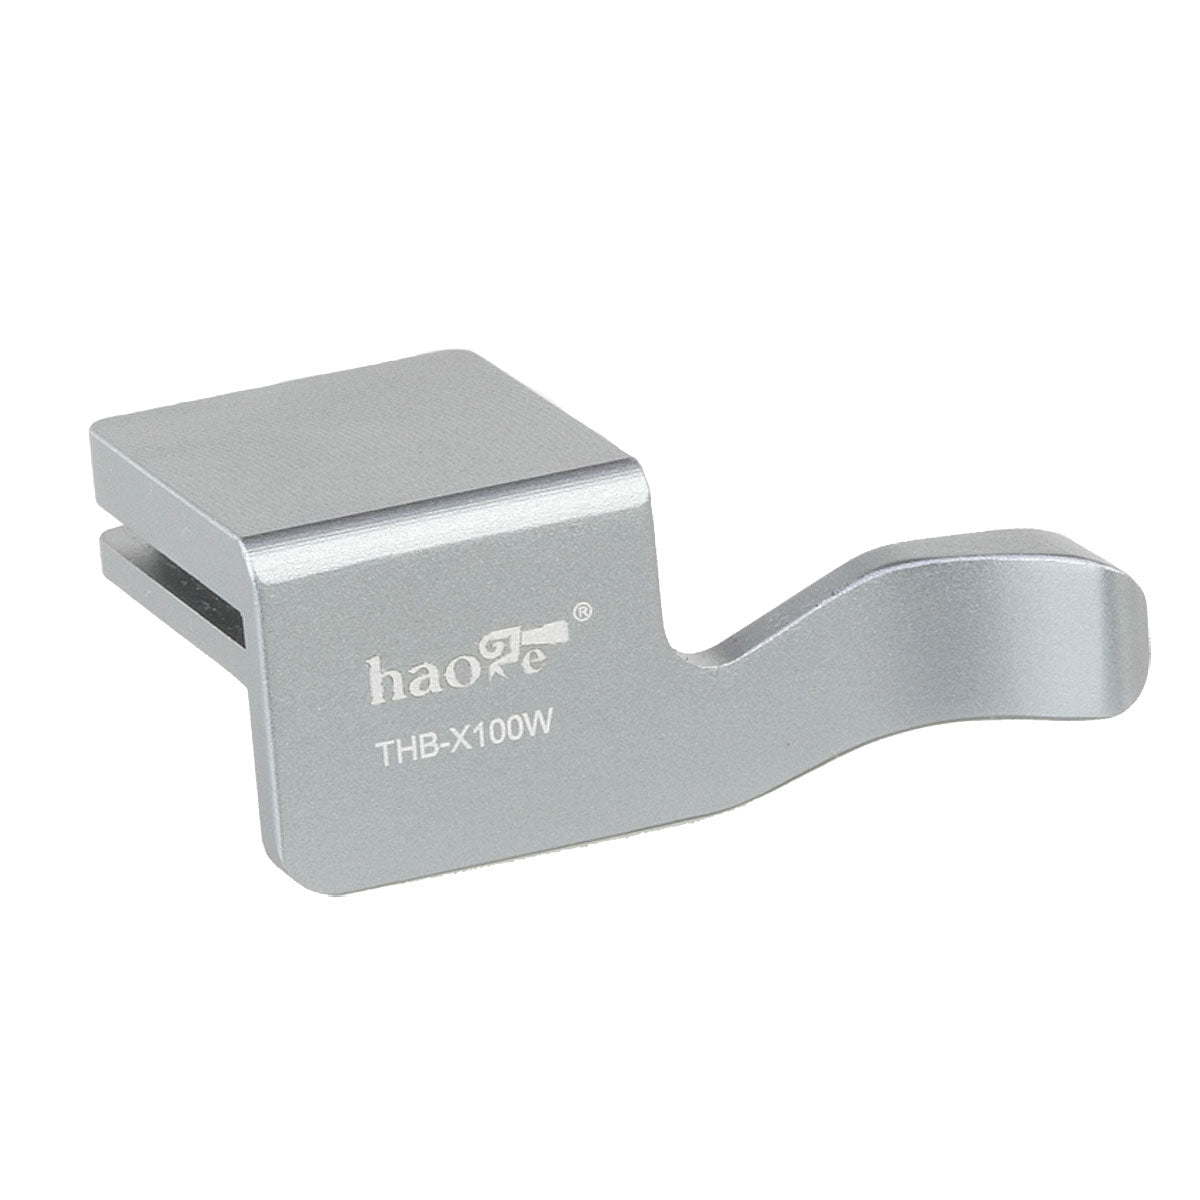 Haoge THB-X100W Hot Shoe Thumb Up Rest Grip For Fujifilm Fuji Finepix X100 X100S Camera Silver